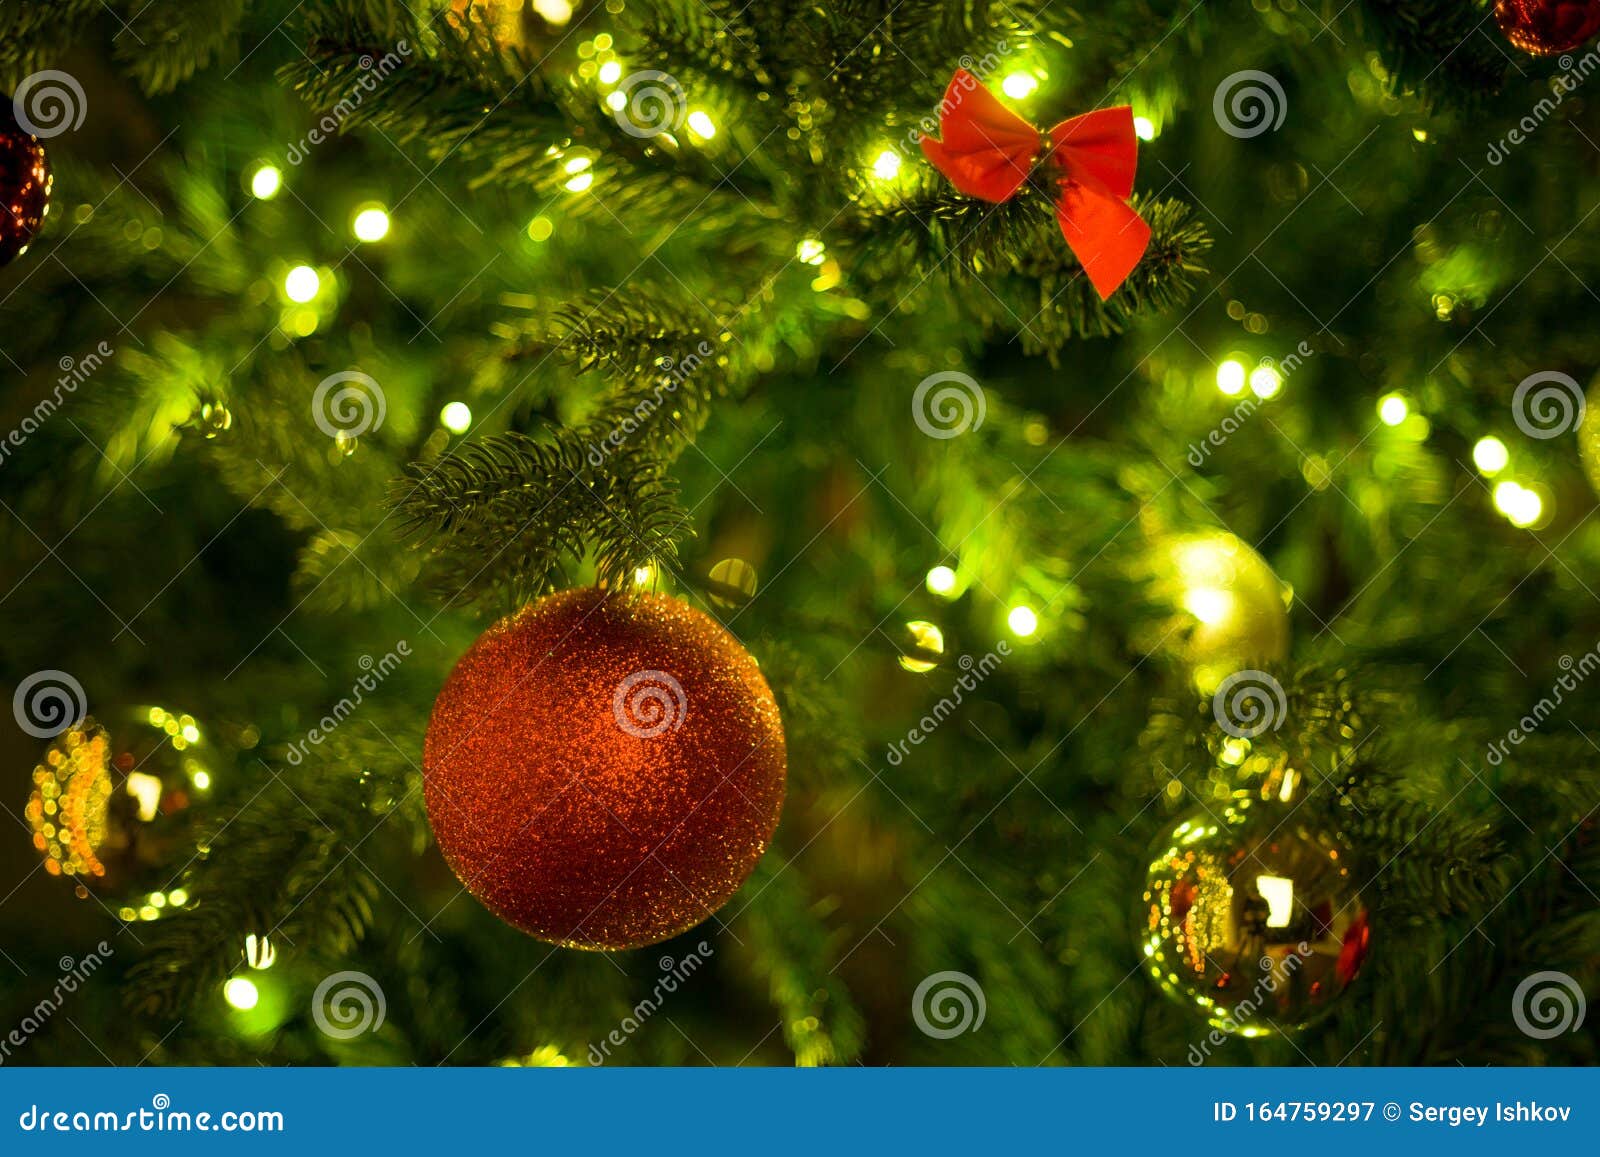 Coöperatie Initiatief Gepland Rode Bal Op Een Kerstboom Met Een Tuin Op De Achtergrond Van Een Houten  Muur Stock Afbeelding - Image of cadeau, decoratie: 164759297